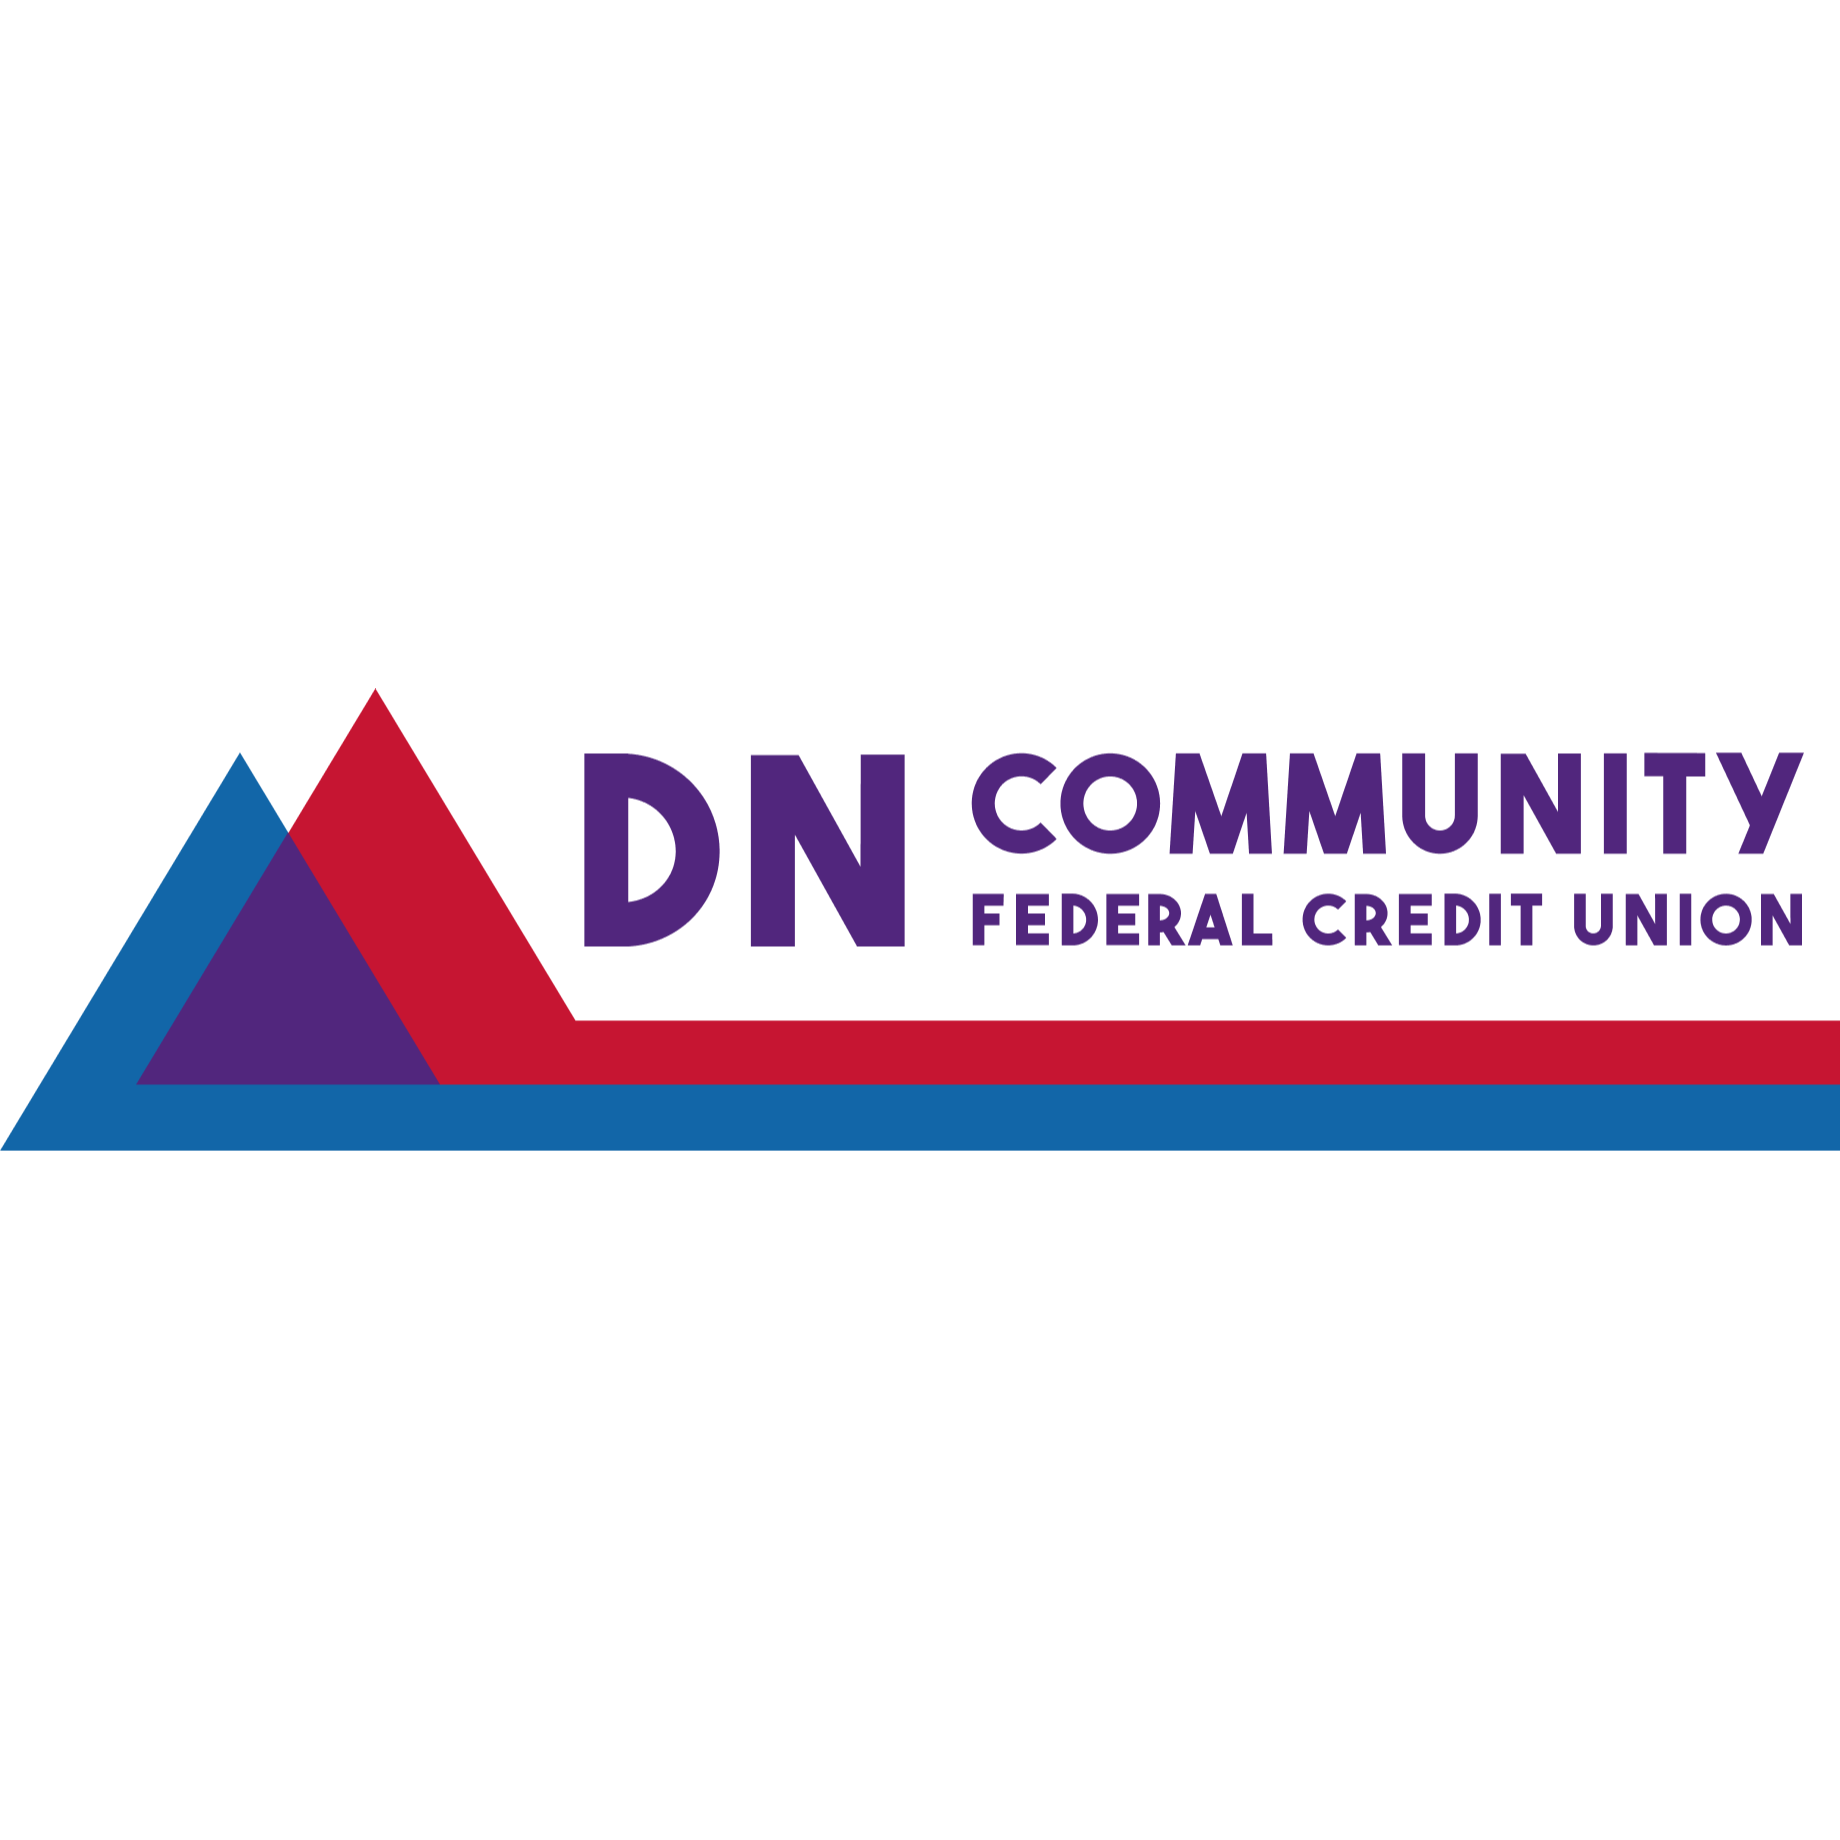 DN Community Federal Credit Union